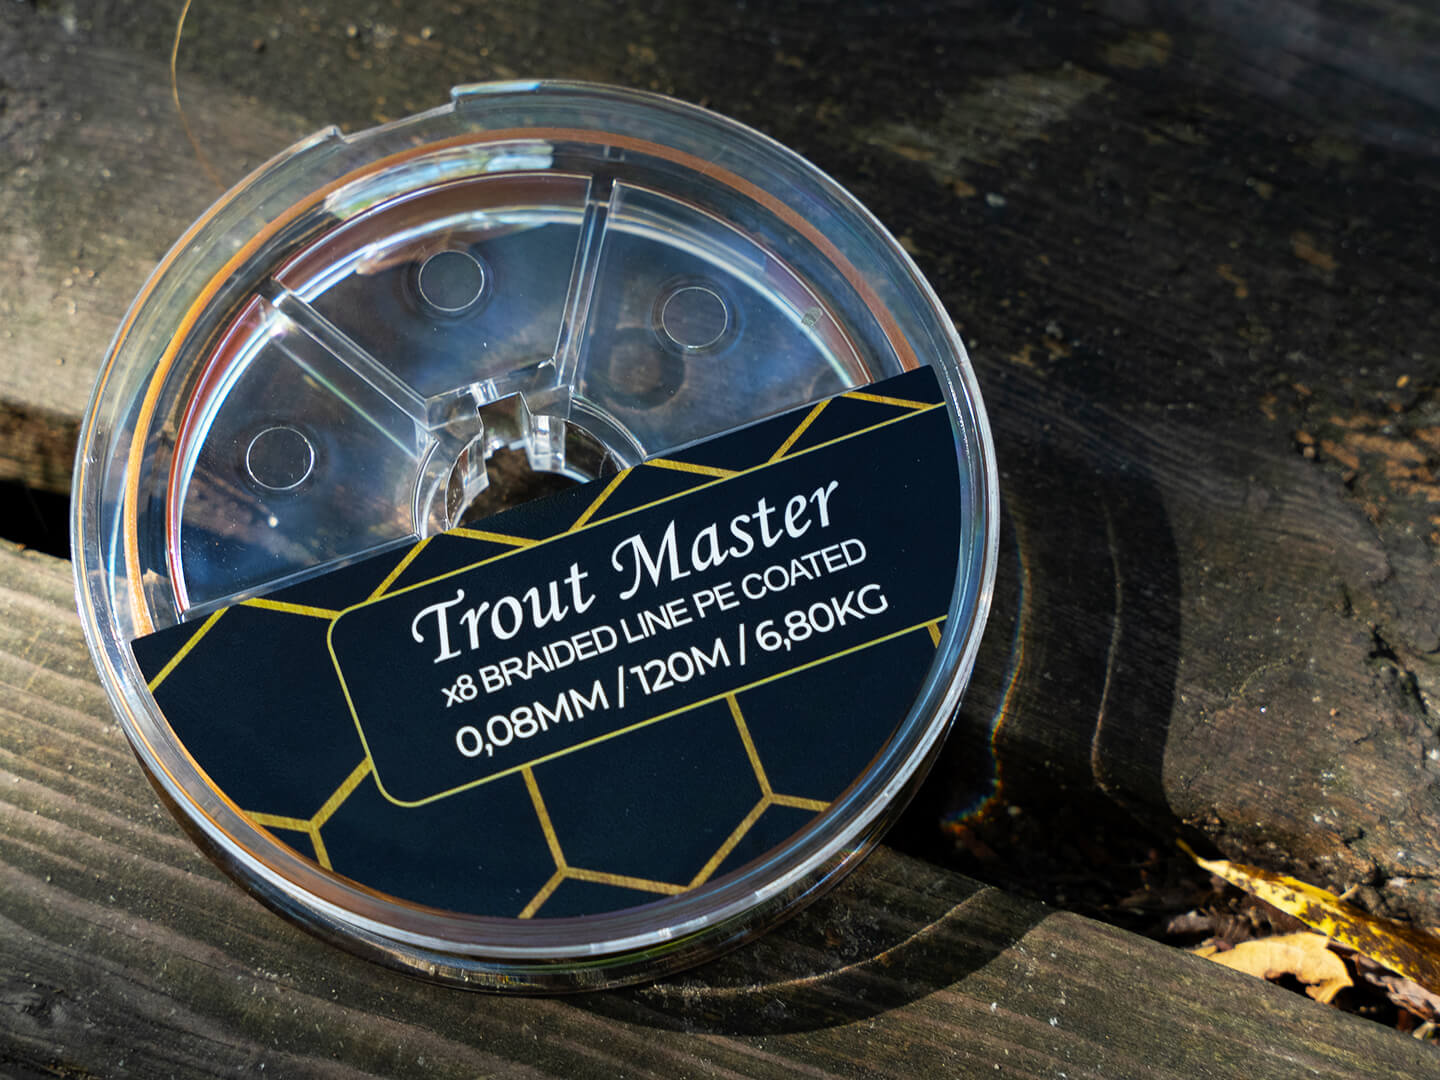 Spro Trout Master Fine Gold X8 PE Lenza Intrecciata (120m)